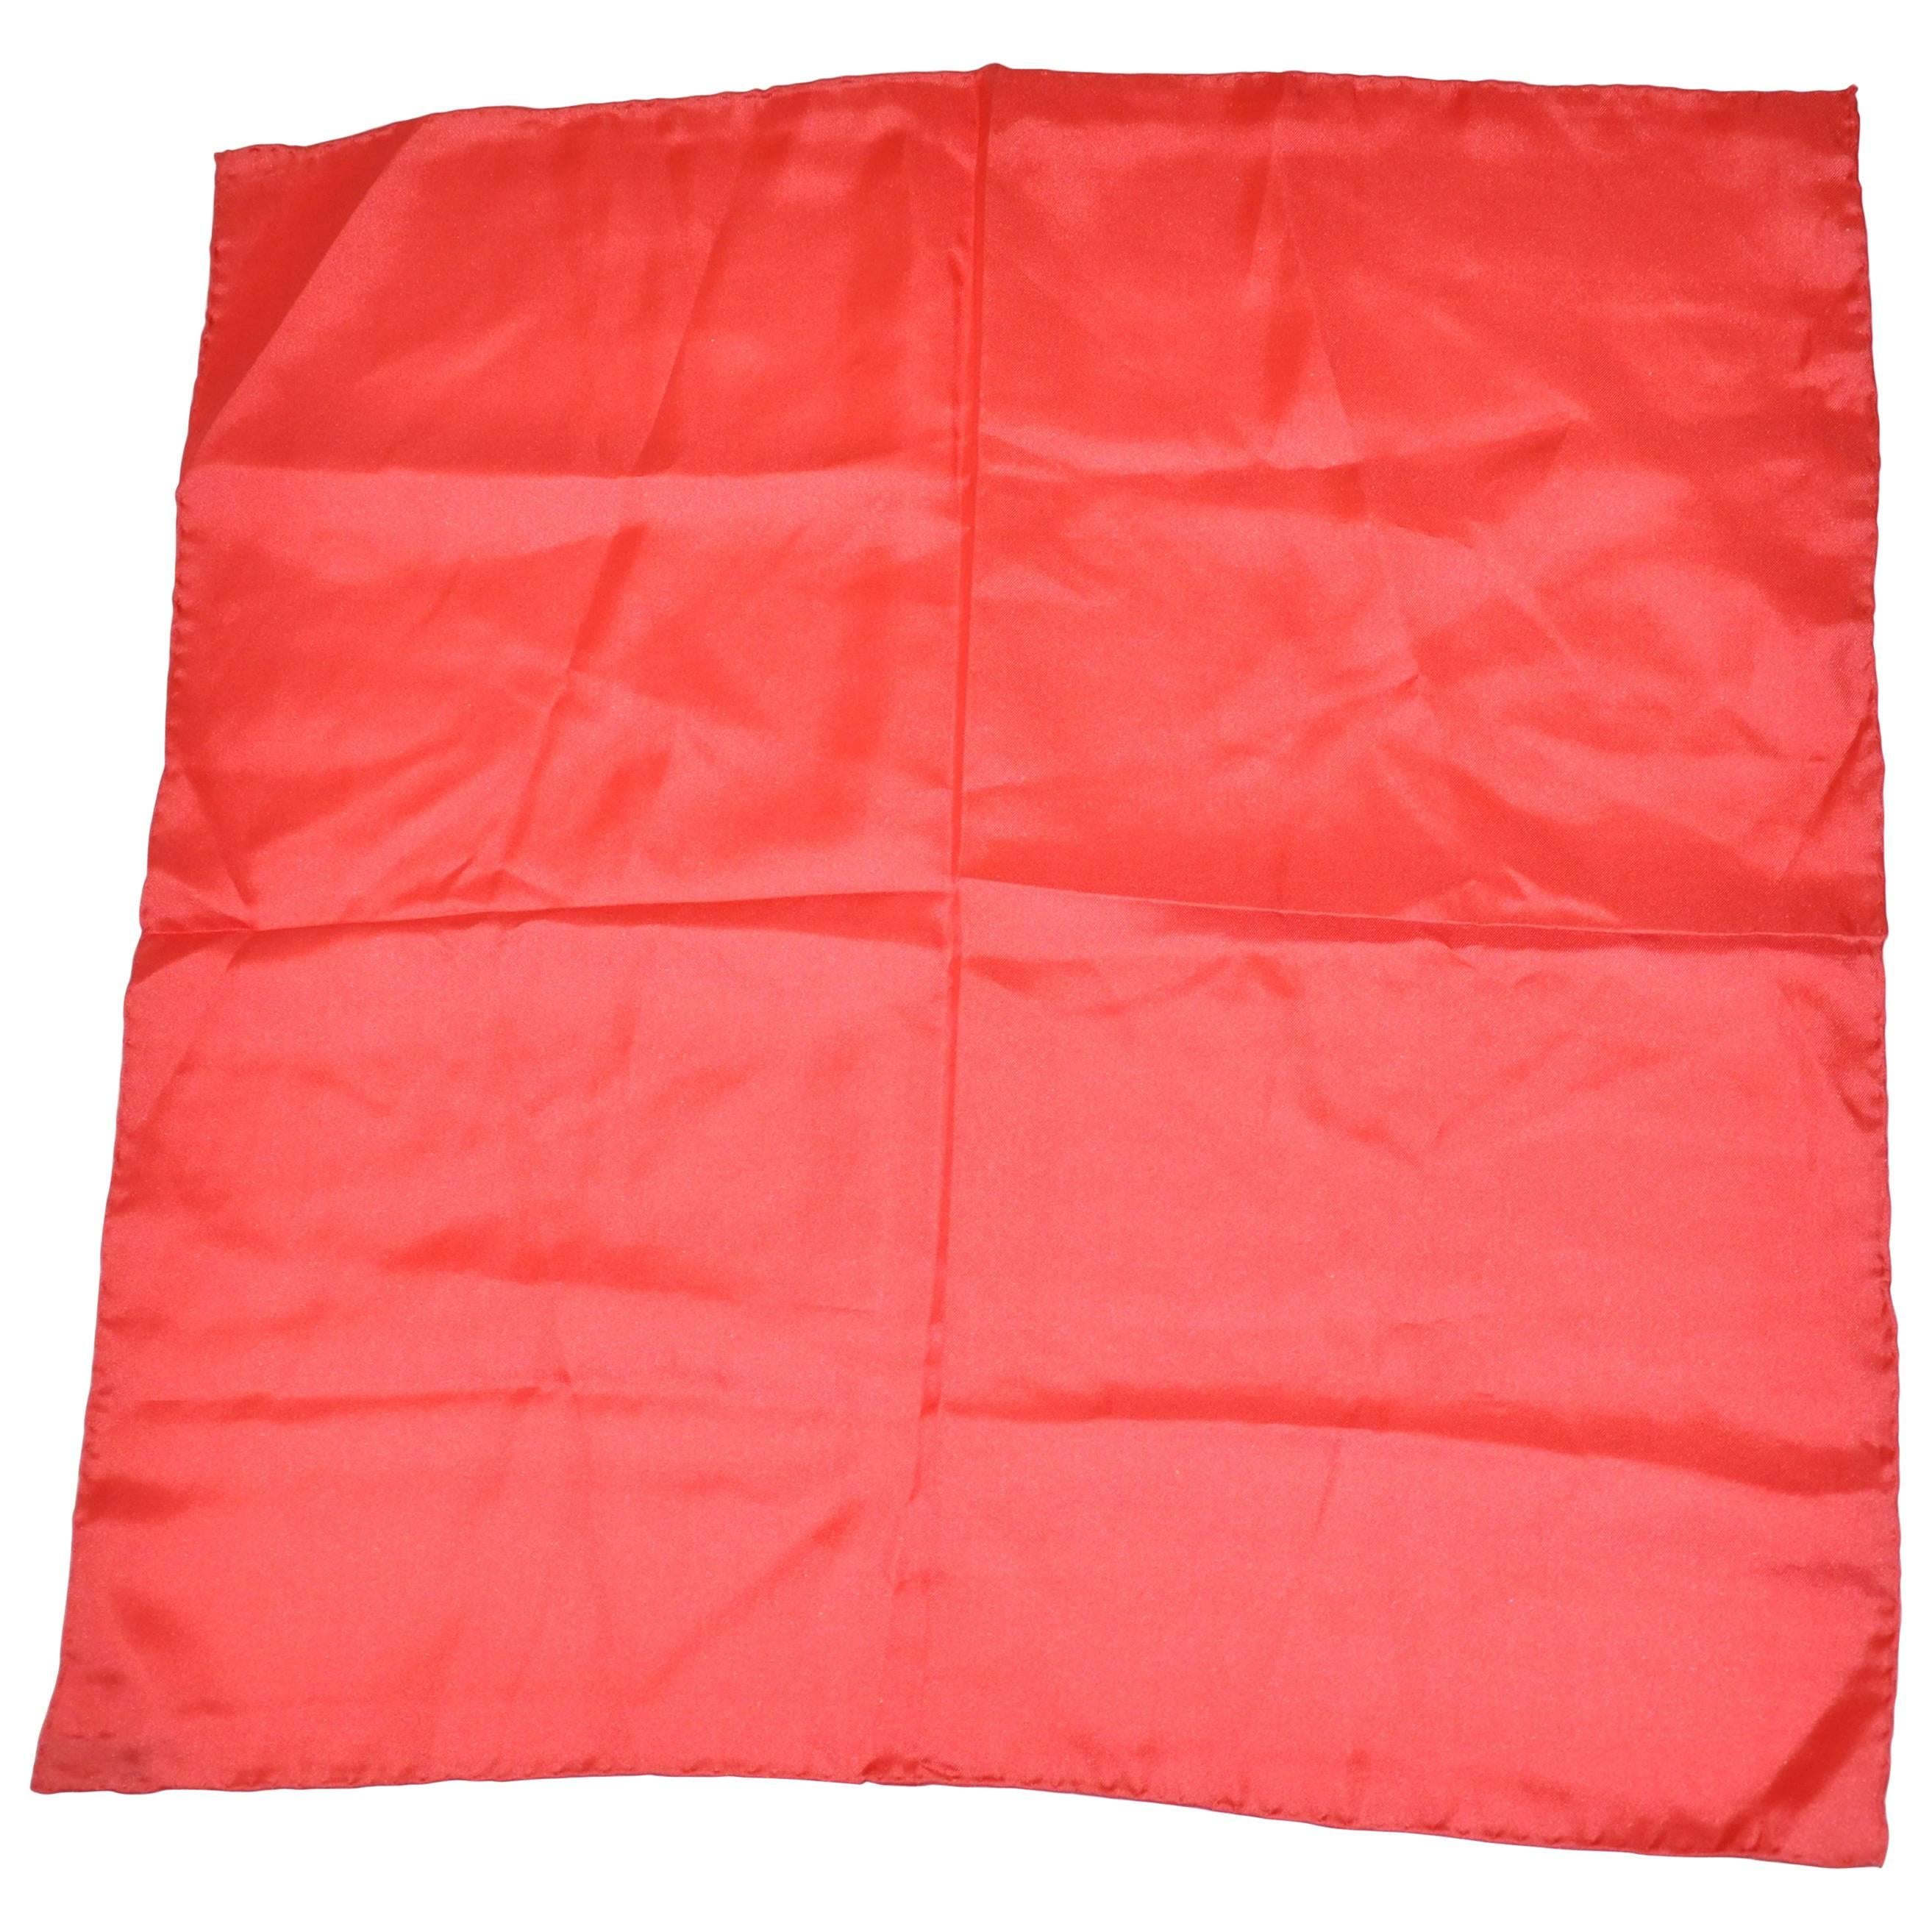 Italienisches rotes Seidenhandtaschentuch mit handgerollten Rändern